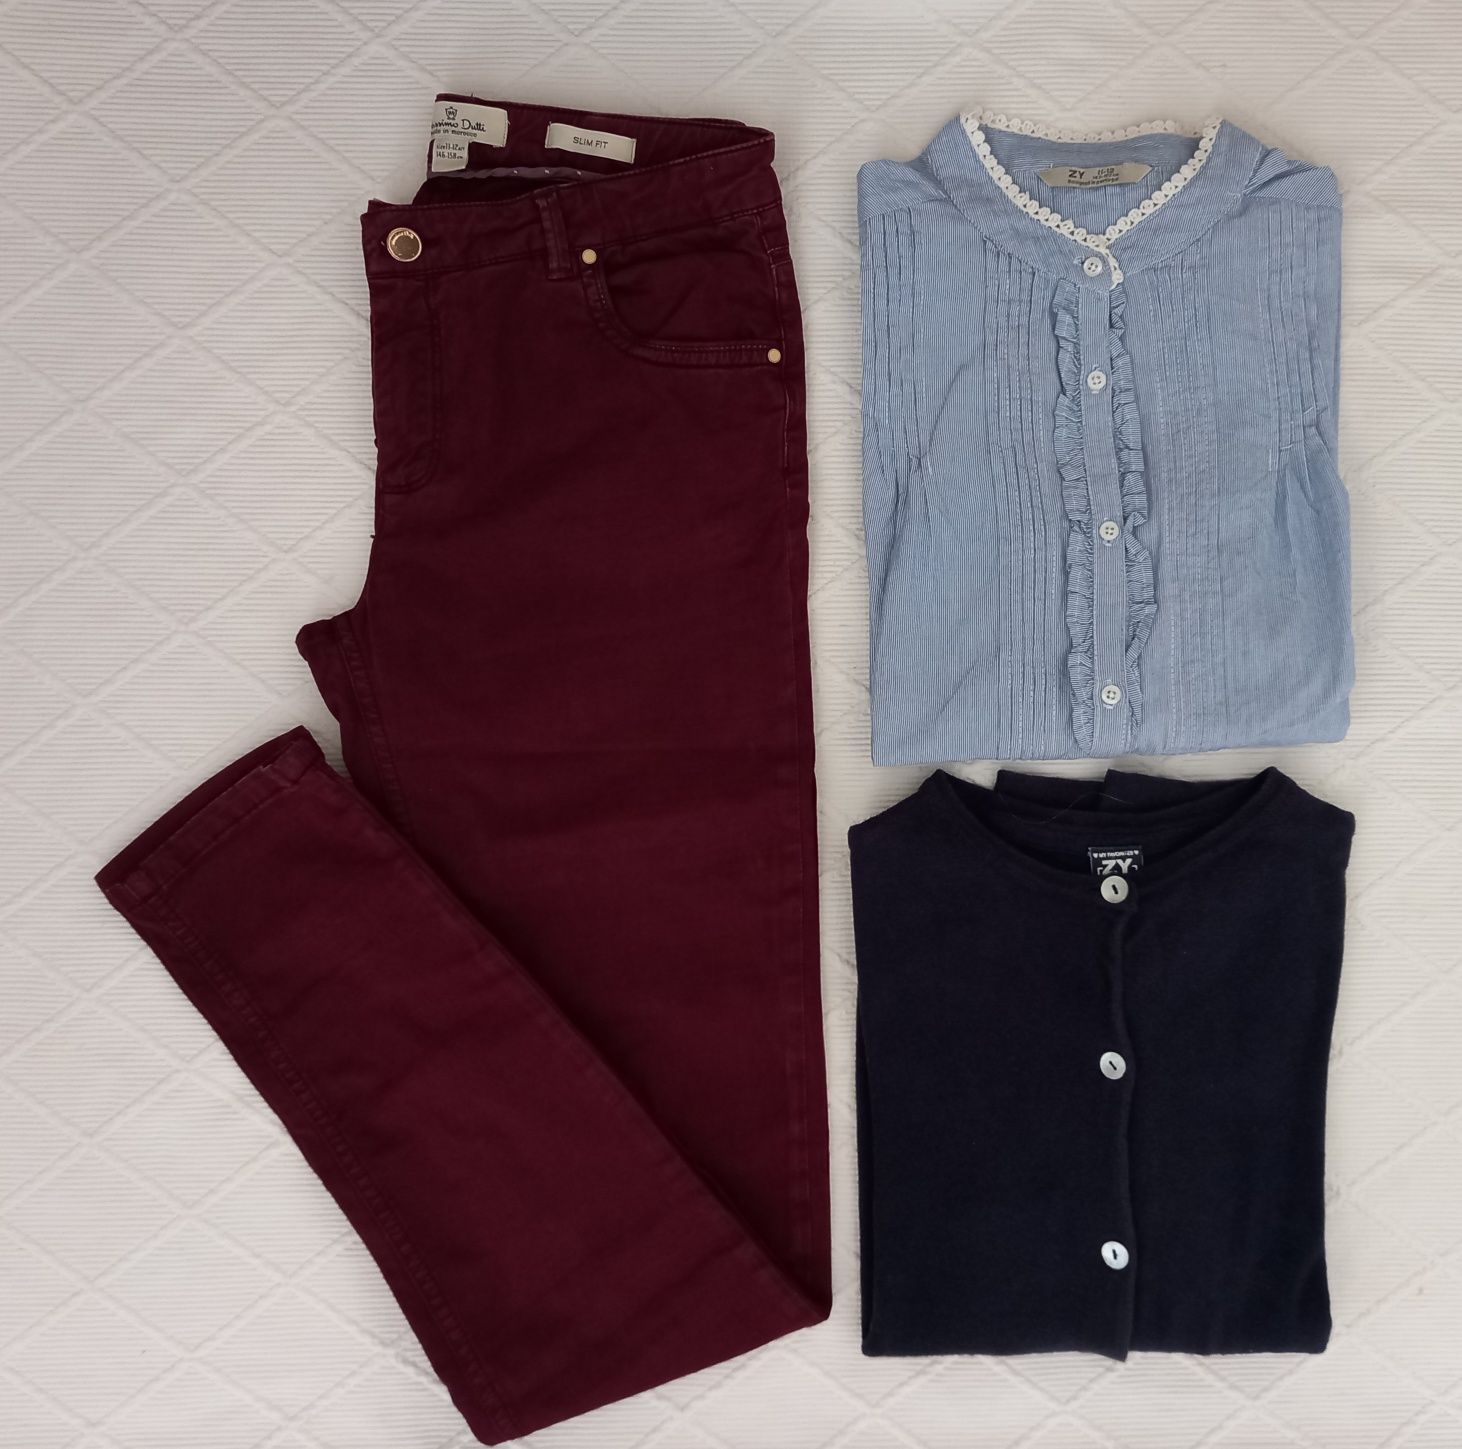 Calças / Jeans Massimo Dutti / blusas rapariga 11/12 anos (desde 3€)